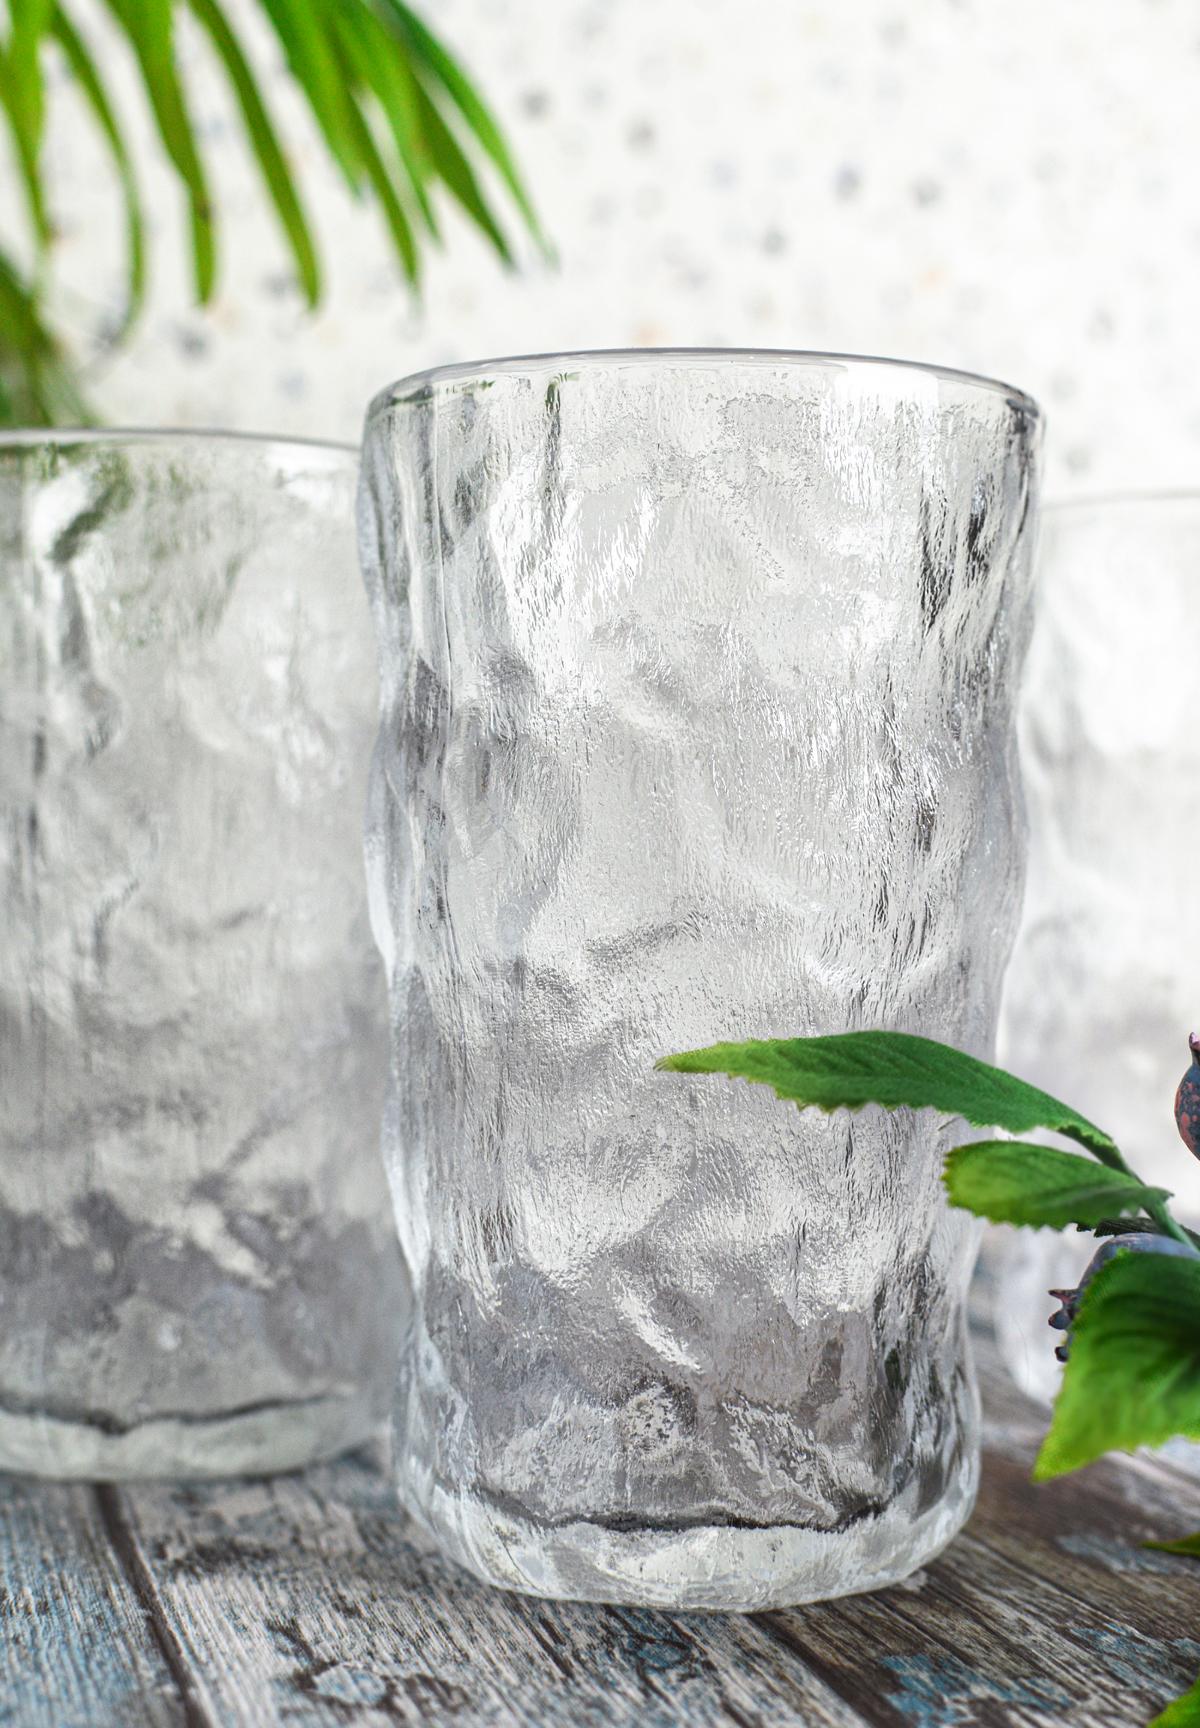 6 verres à long drink 370ml verres à eau iceberg verres à jus verres à cocktail verres à boire